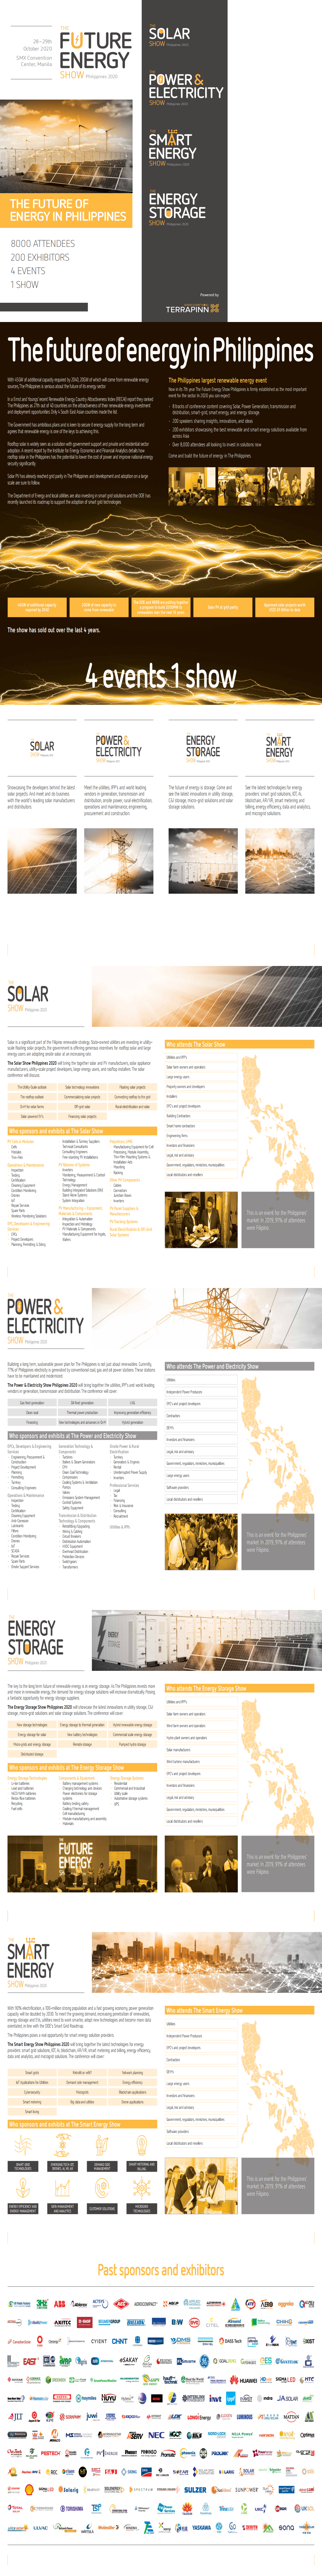 菲律宾马尼拉电力及能源展览会PEWP